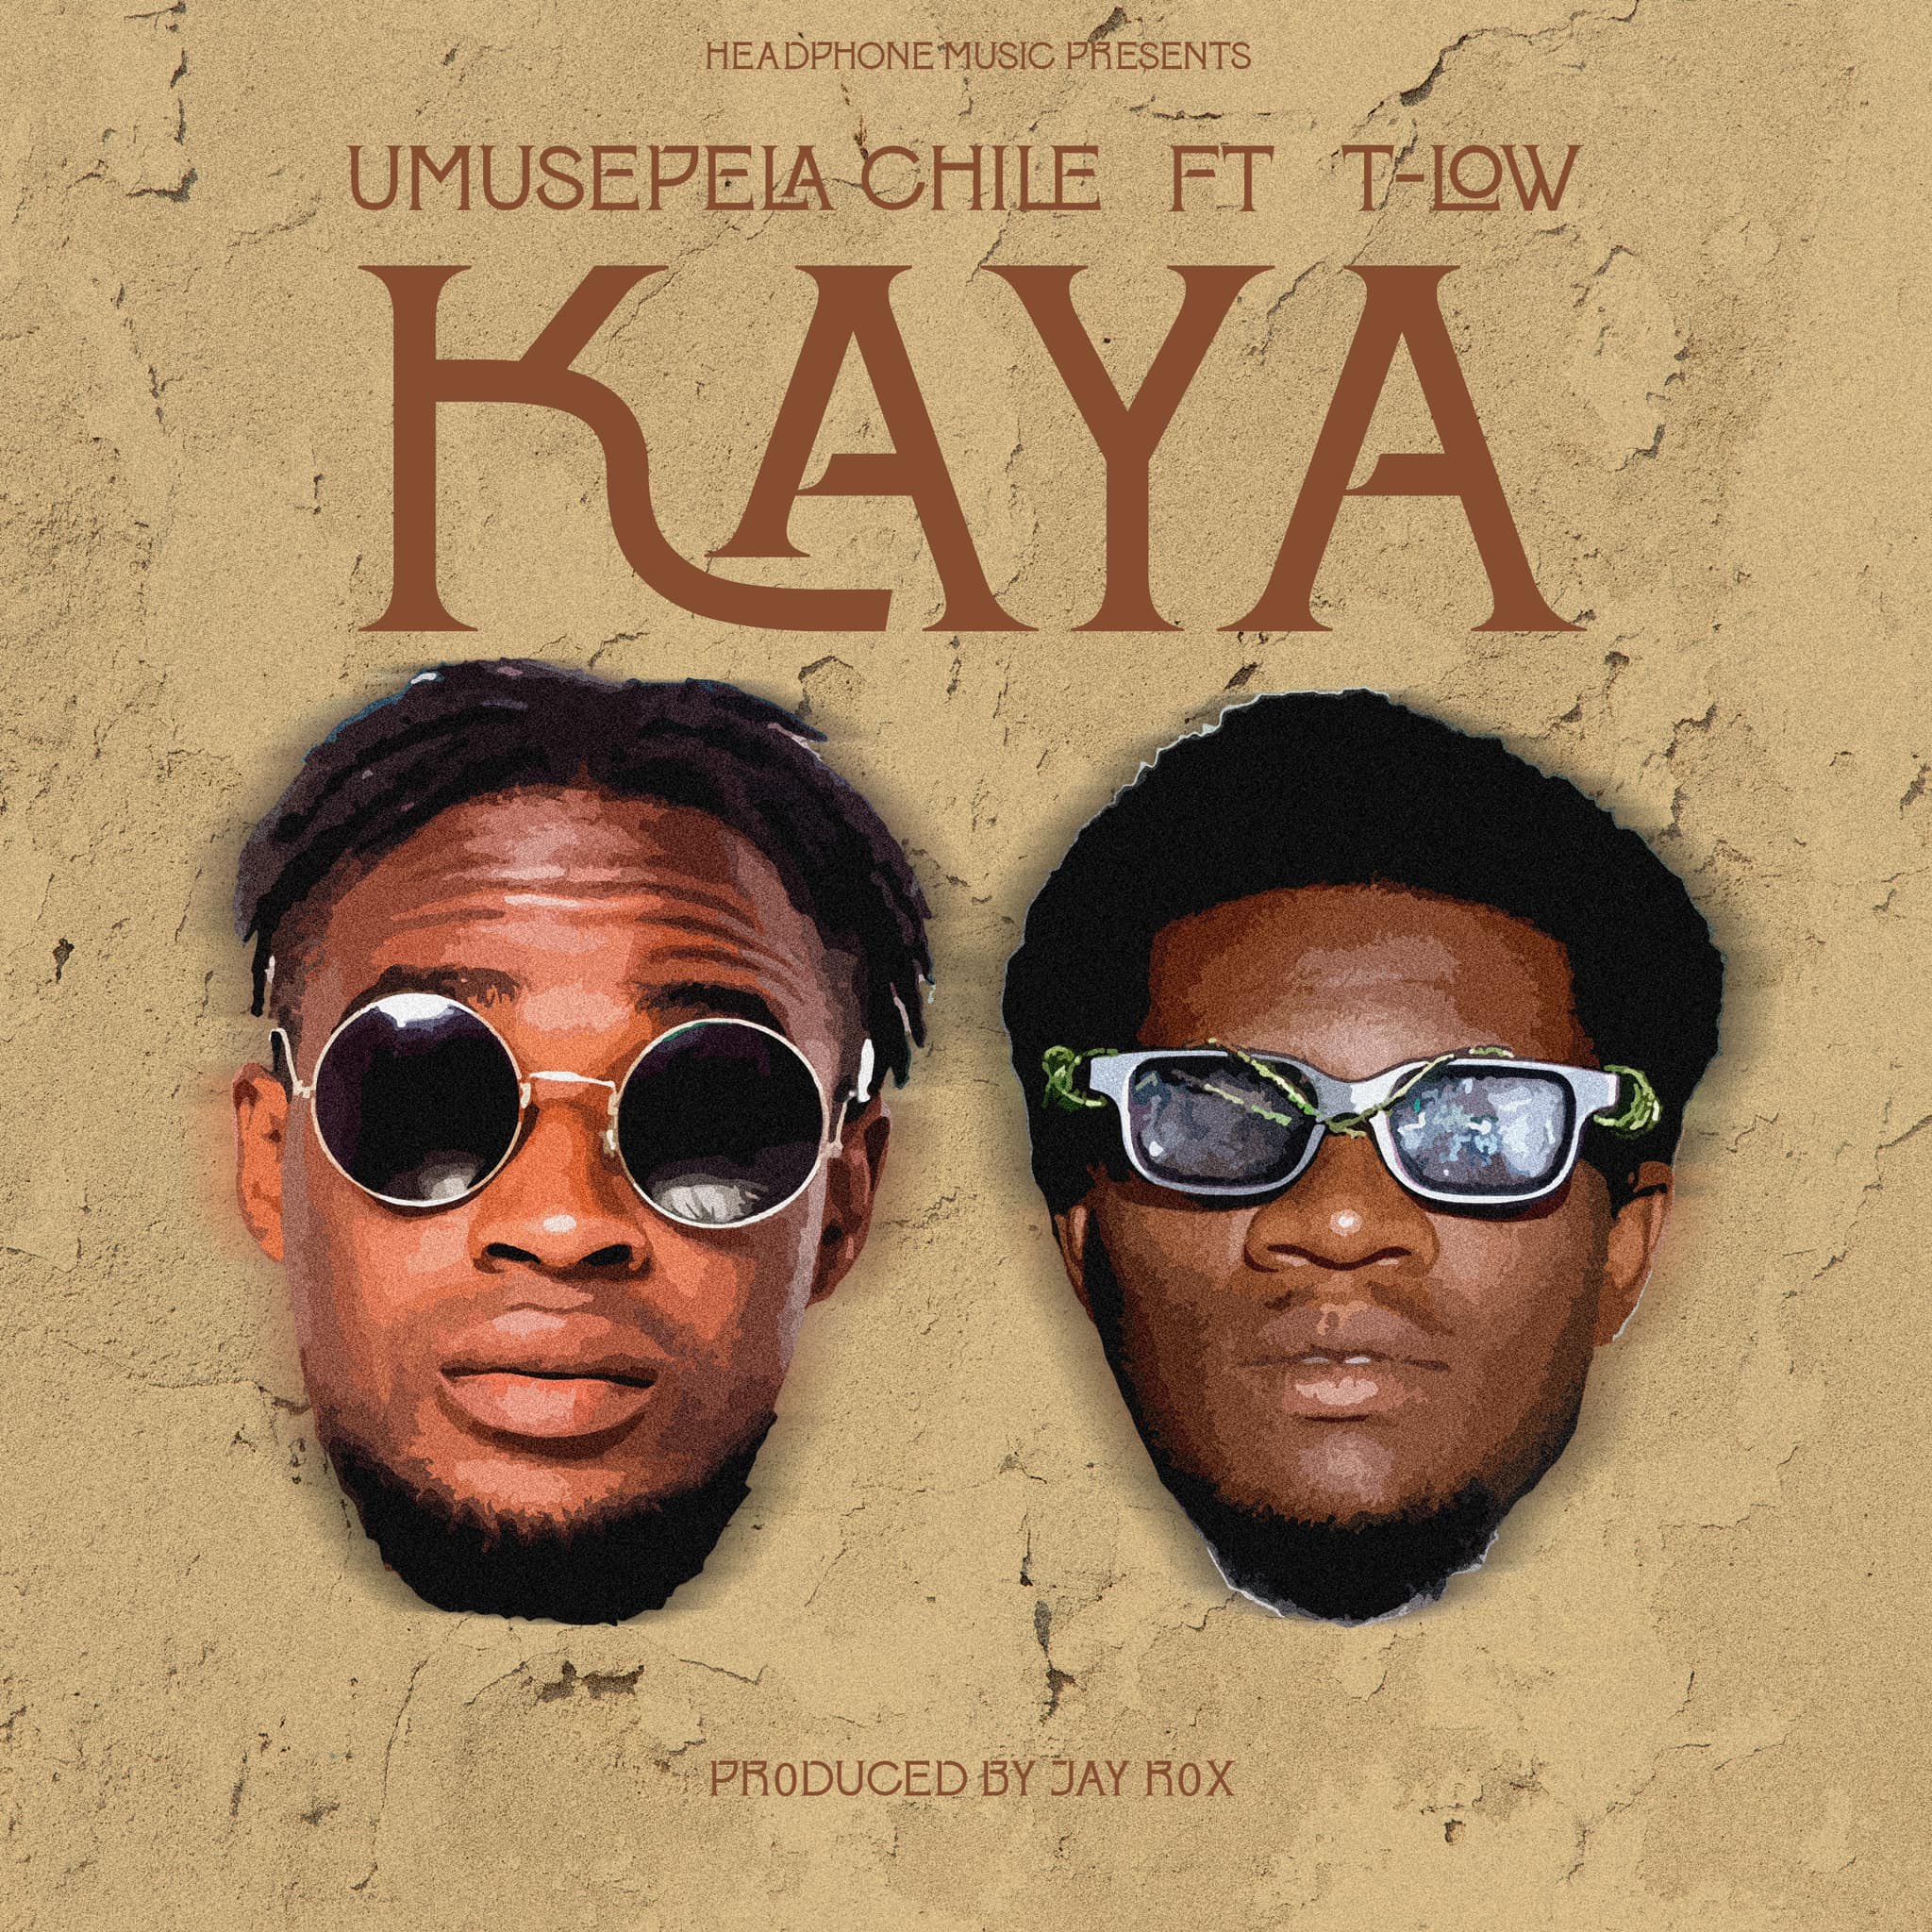 Umusepela Chile ft. T Low – Kaya Mp3 Download